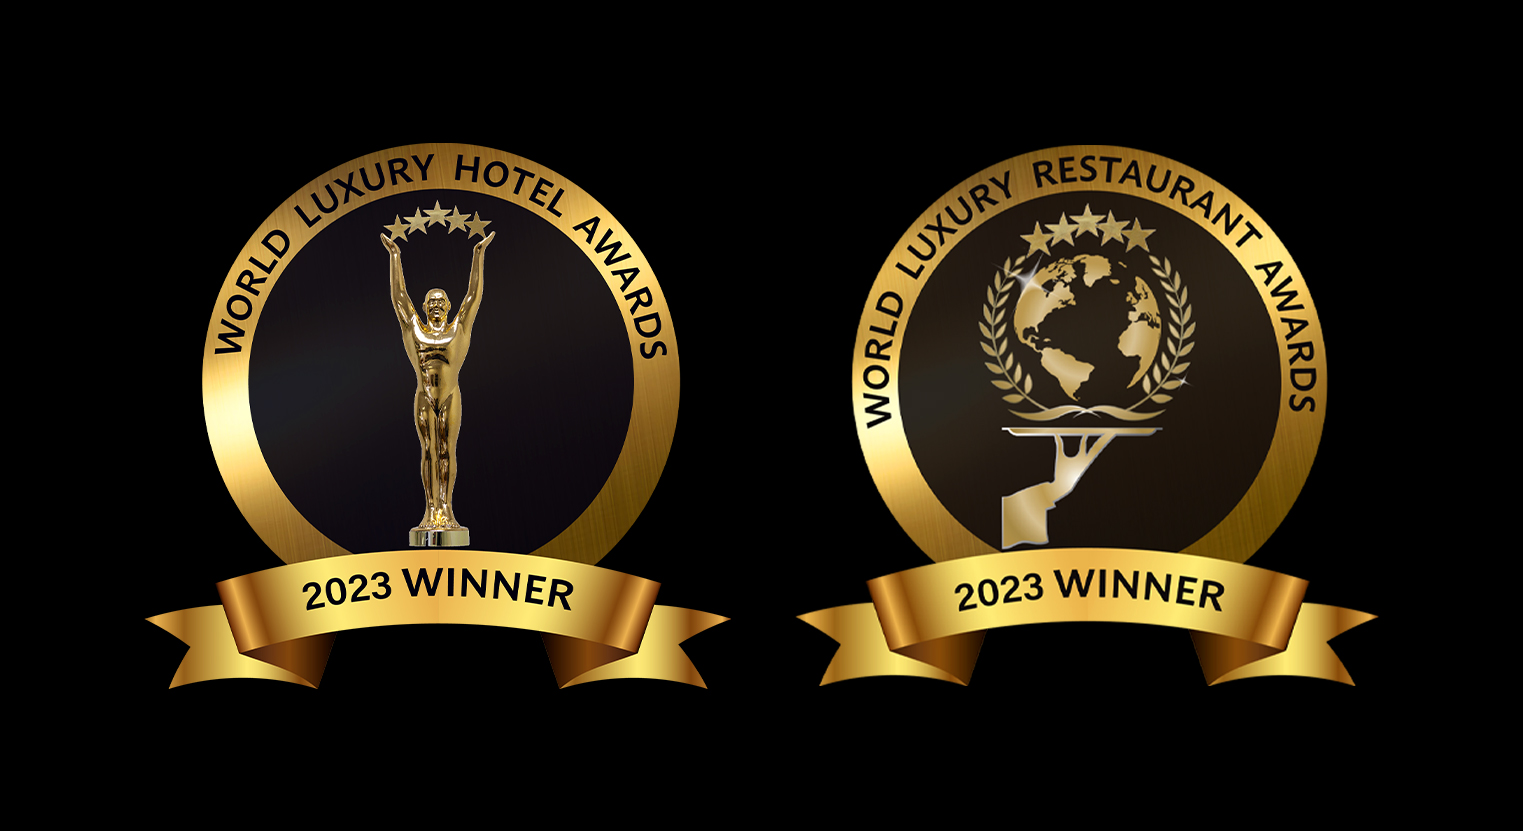 The World Luxury Hotel Awards 2023